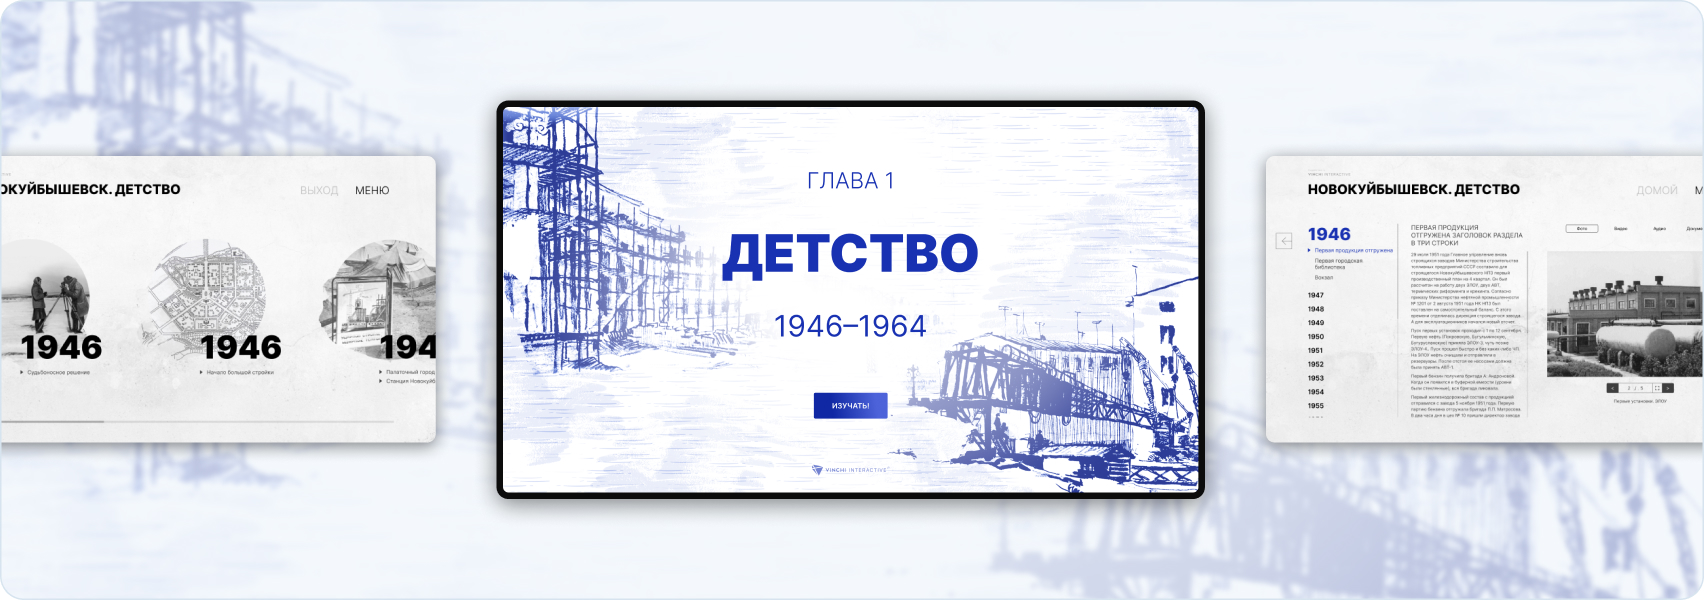 История города. Интерактивные приложения для музея Новокуйбышевска